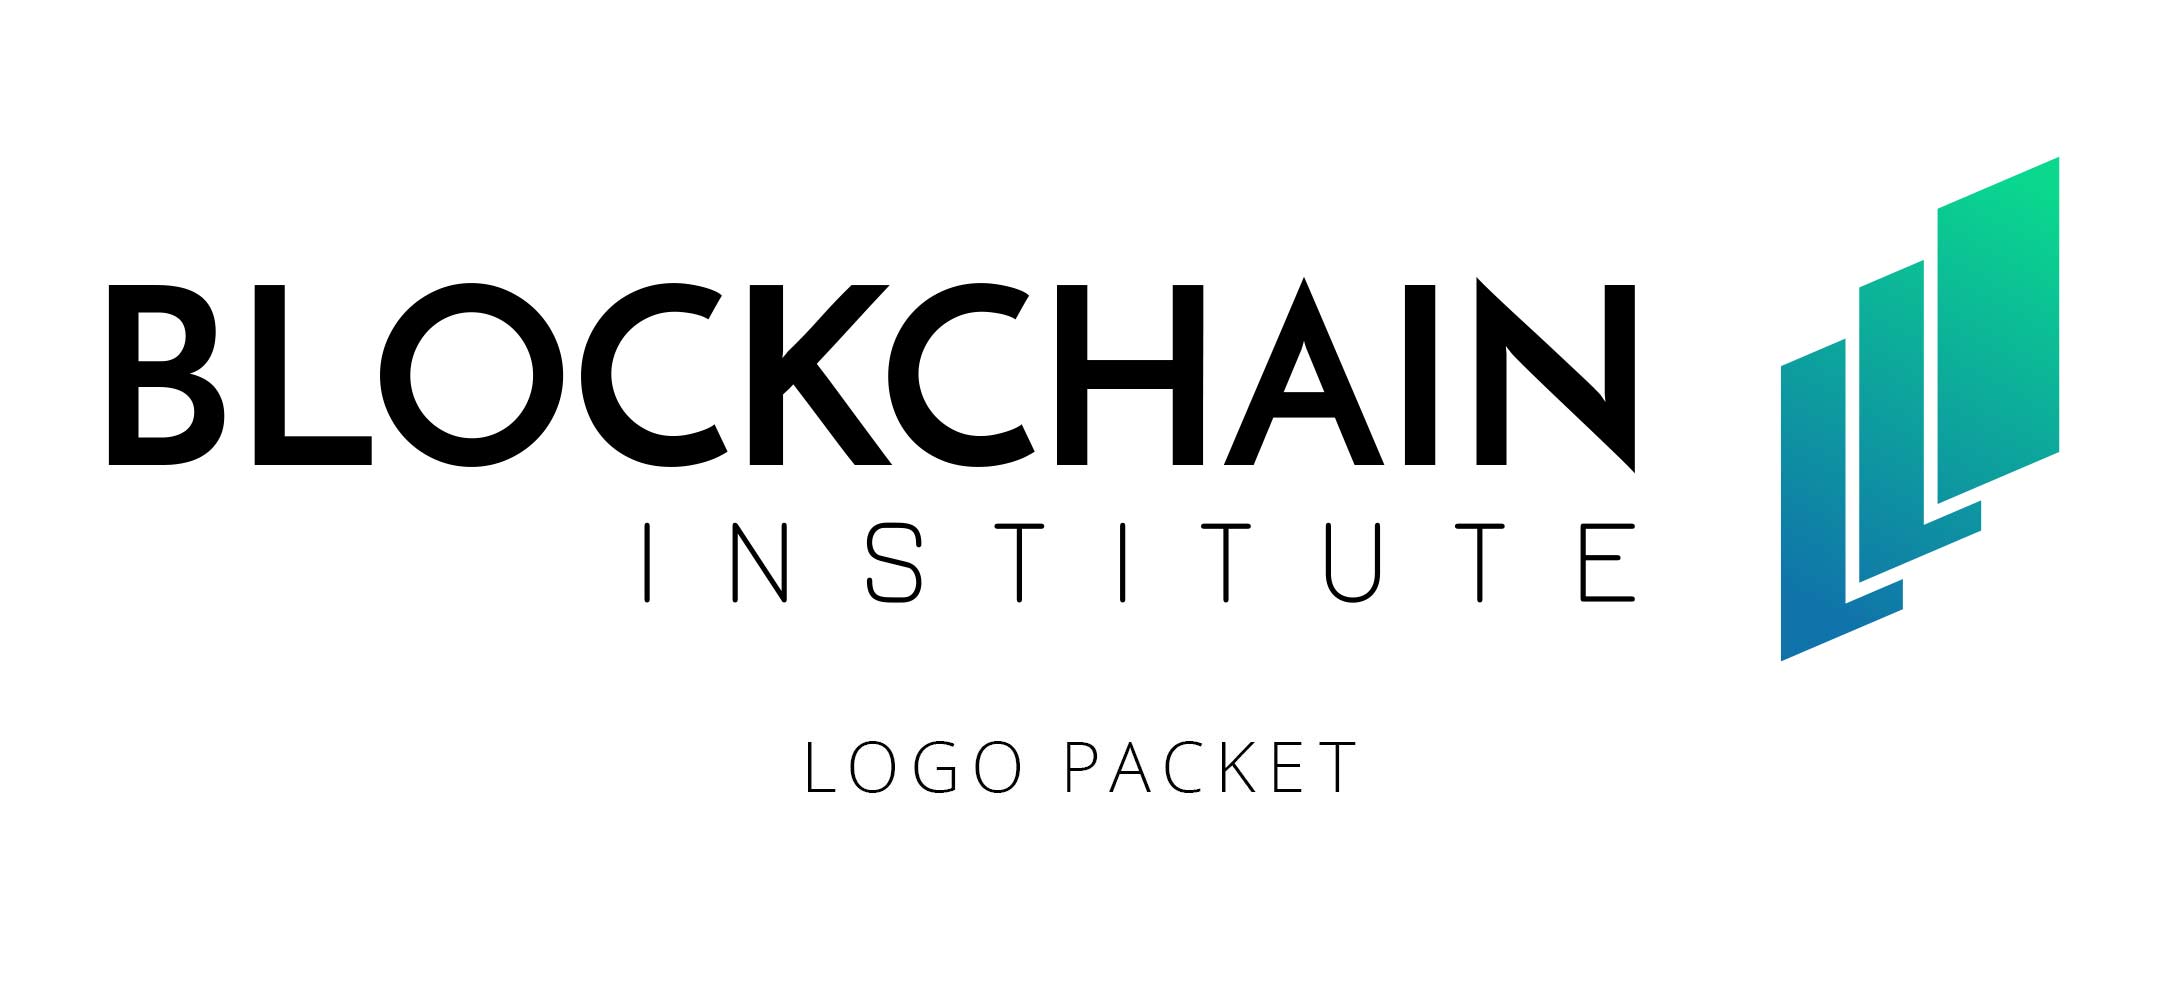 The Blockchain Institute logos